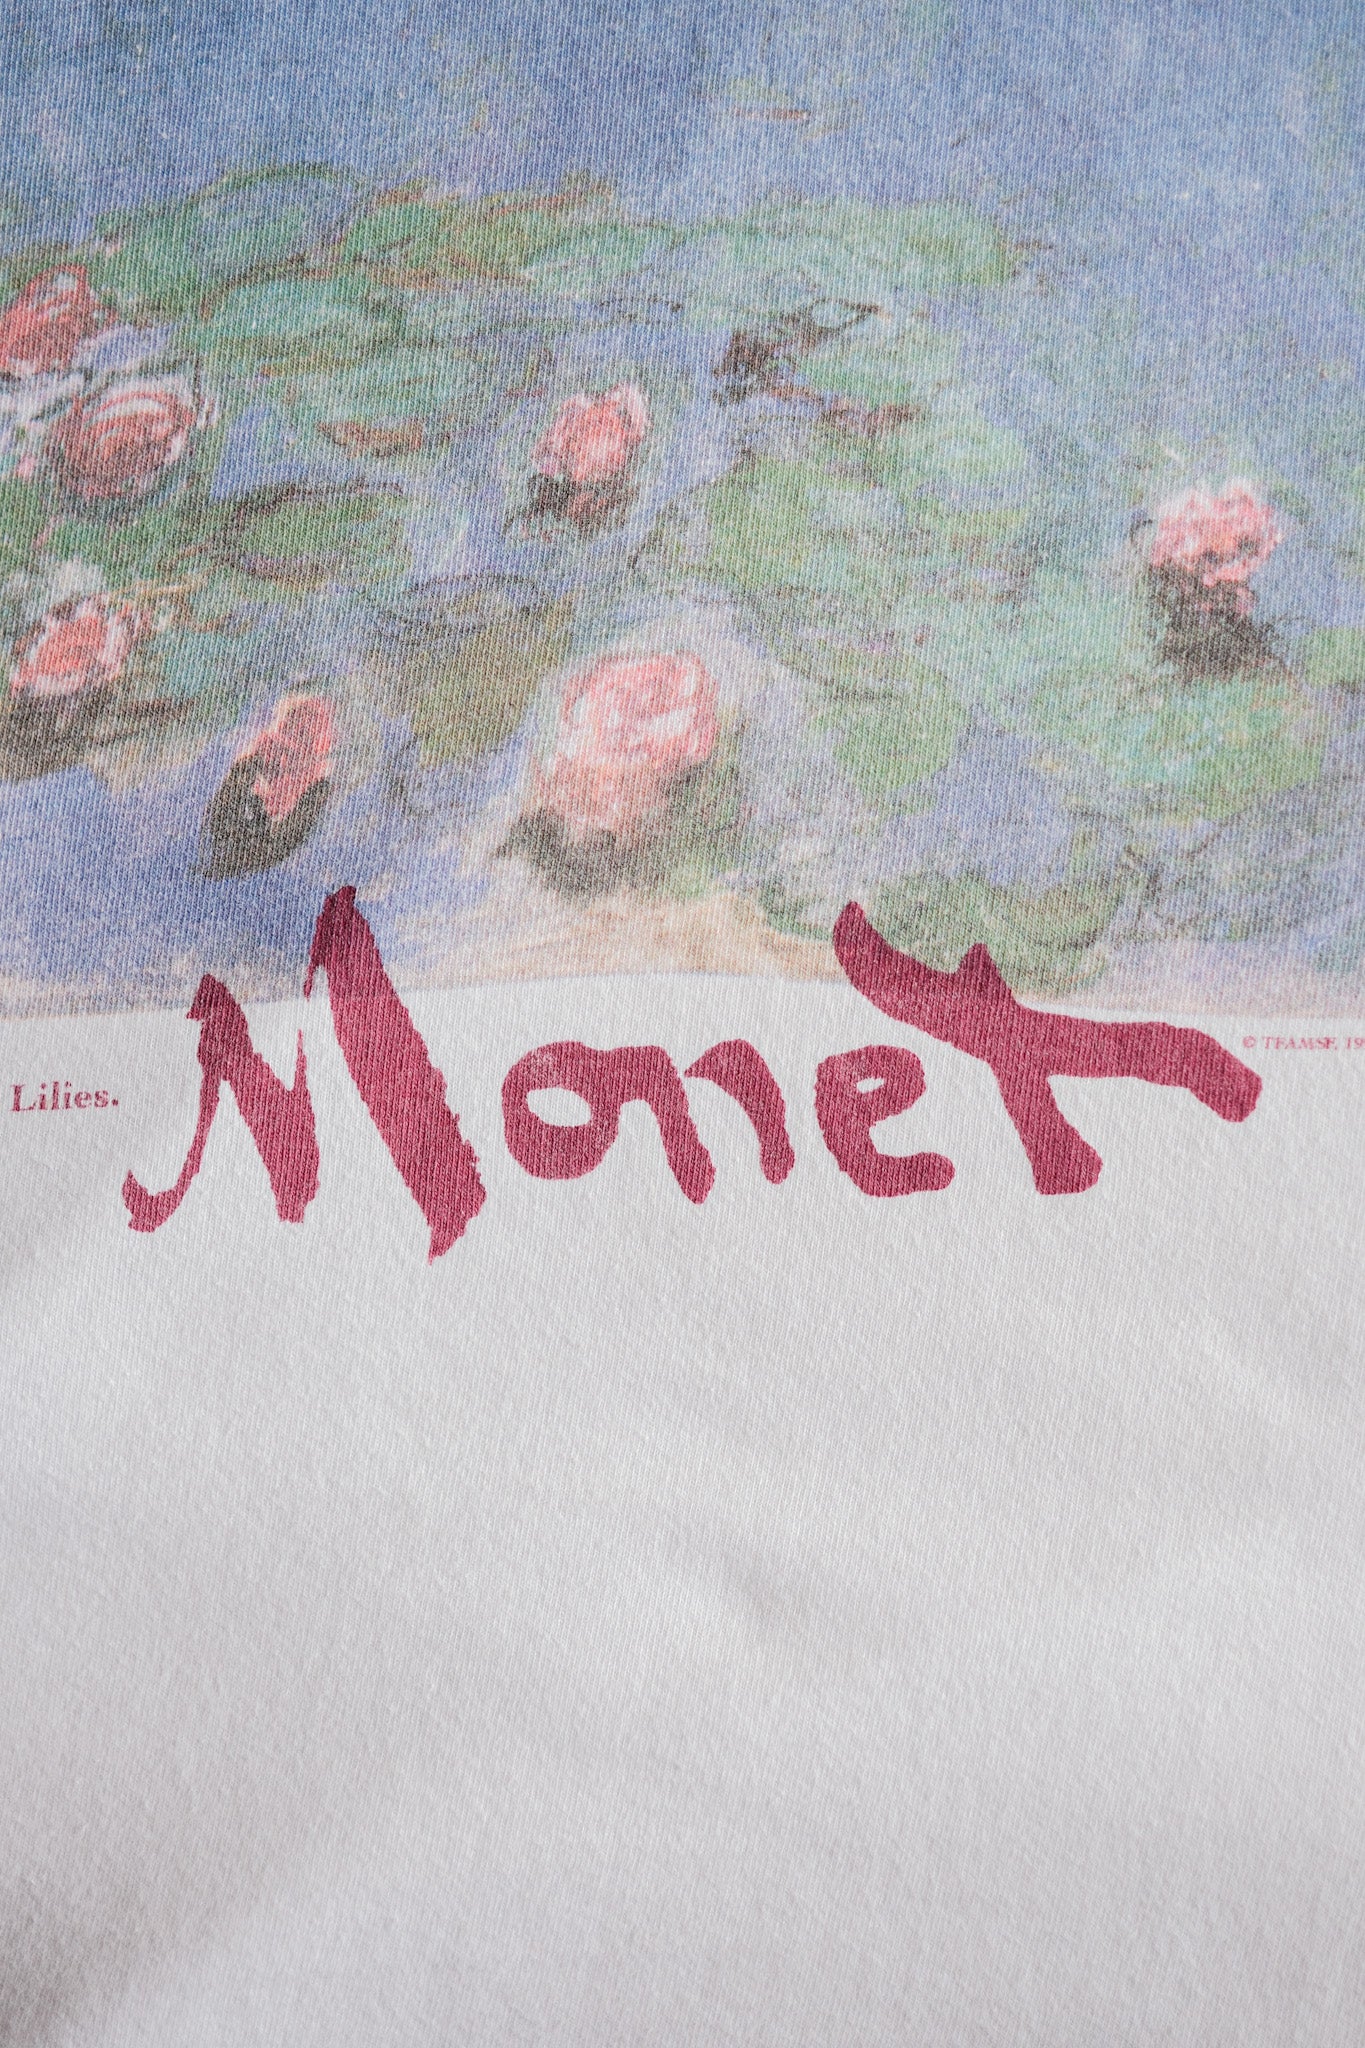 [~ 90 년대] 빈티지 아트 프린트 티셔츠 크기 .xl "Claude Monet" "Water Lilies" "Made in U.S.A."